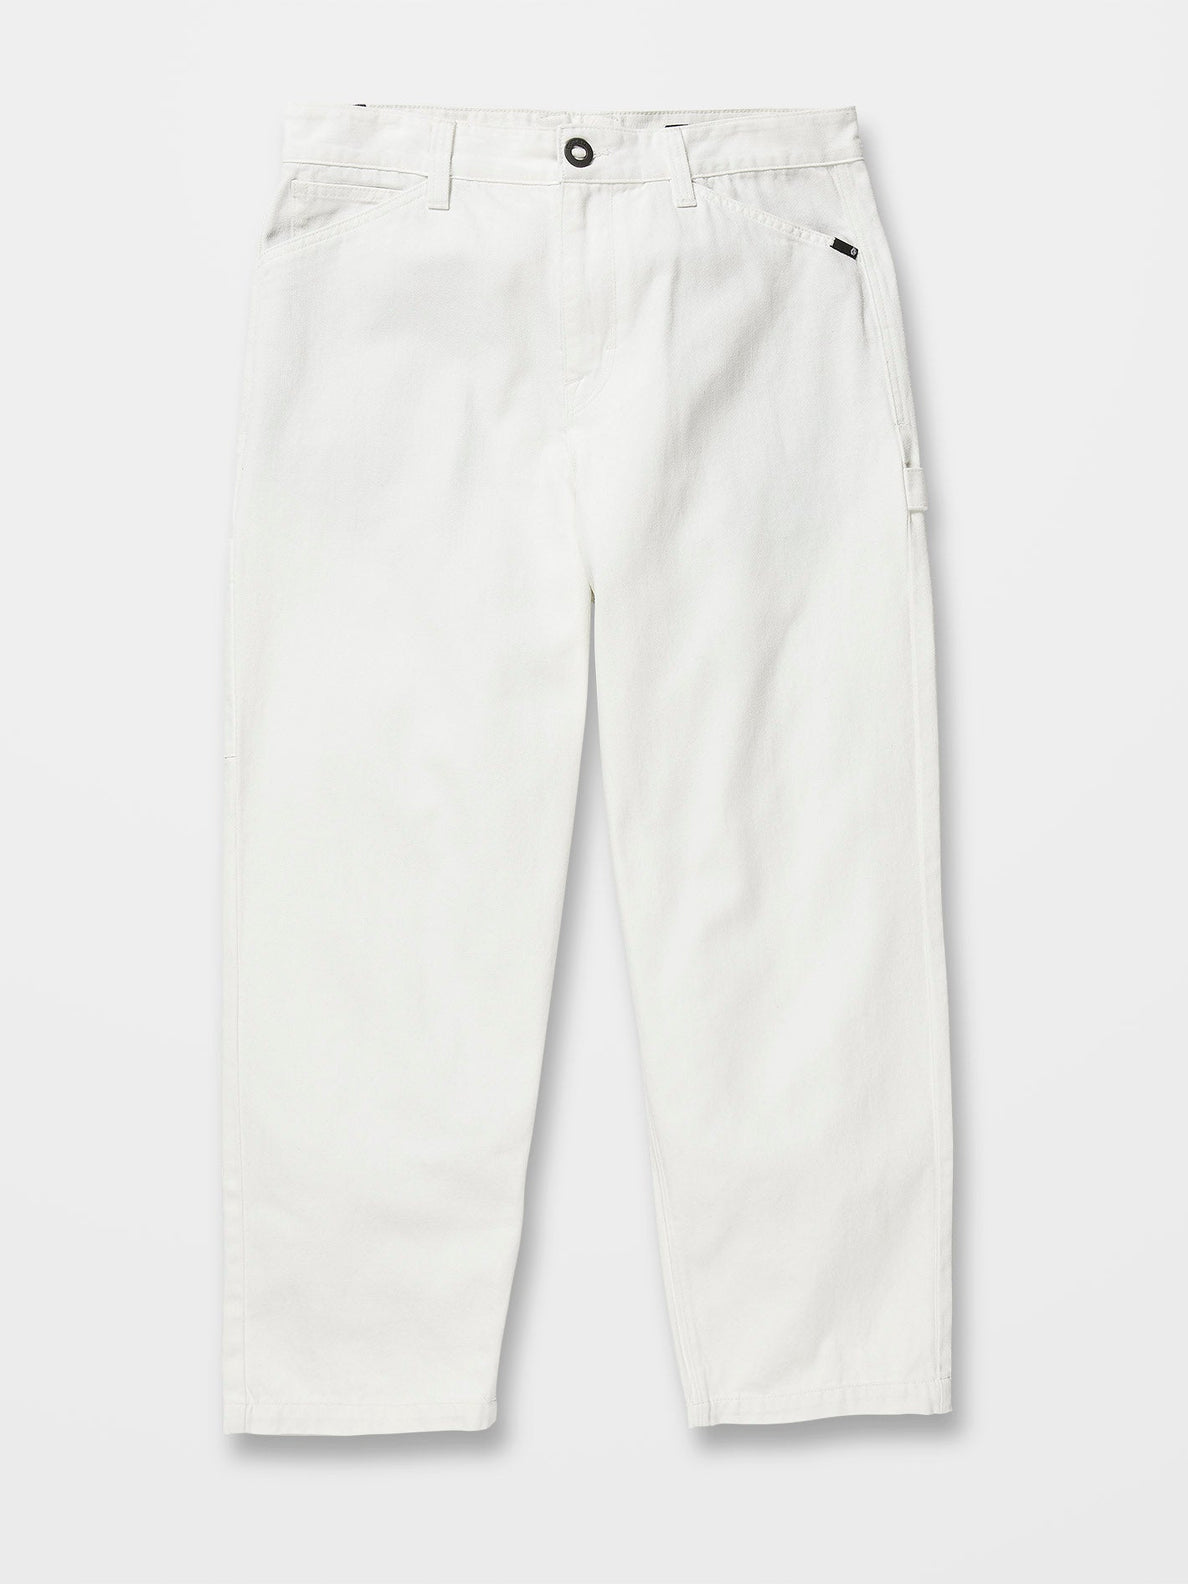 Kraftsman Trousers - WHITECAP GREY (A1122200_WCG) [6]